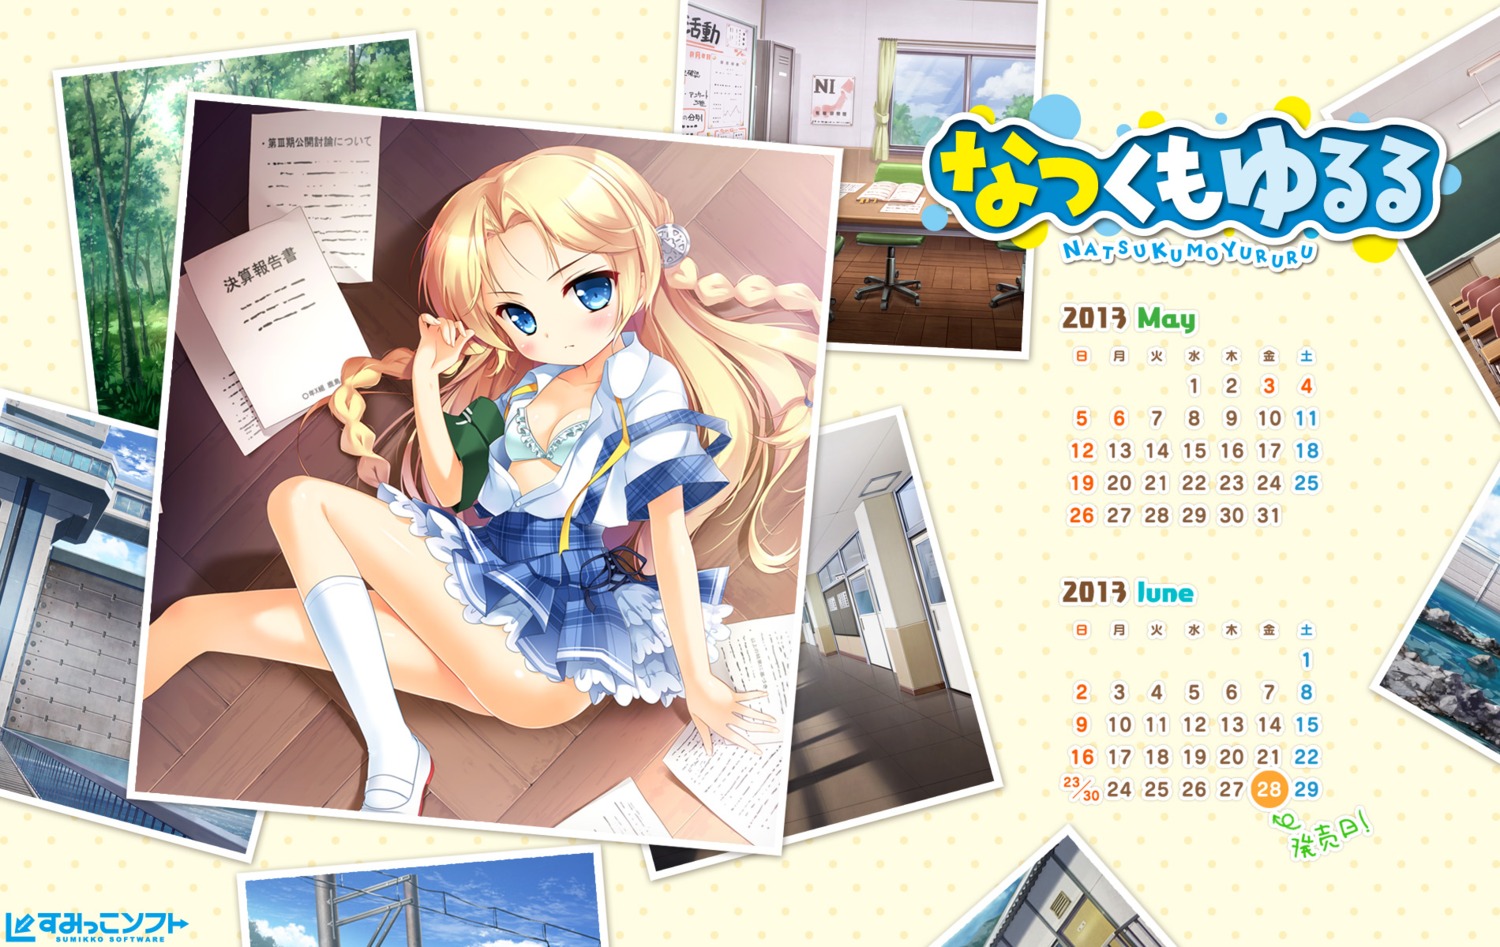 bra calendar kashima_yuuri natsukumo_yururu open_shirt sasai_saji seifuku sumikko-soft wallpaper